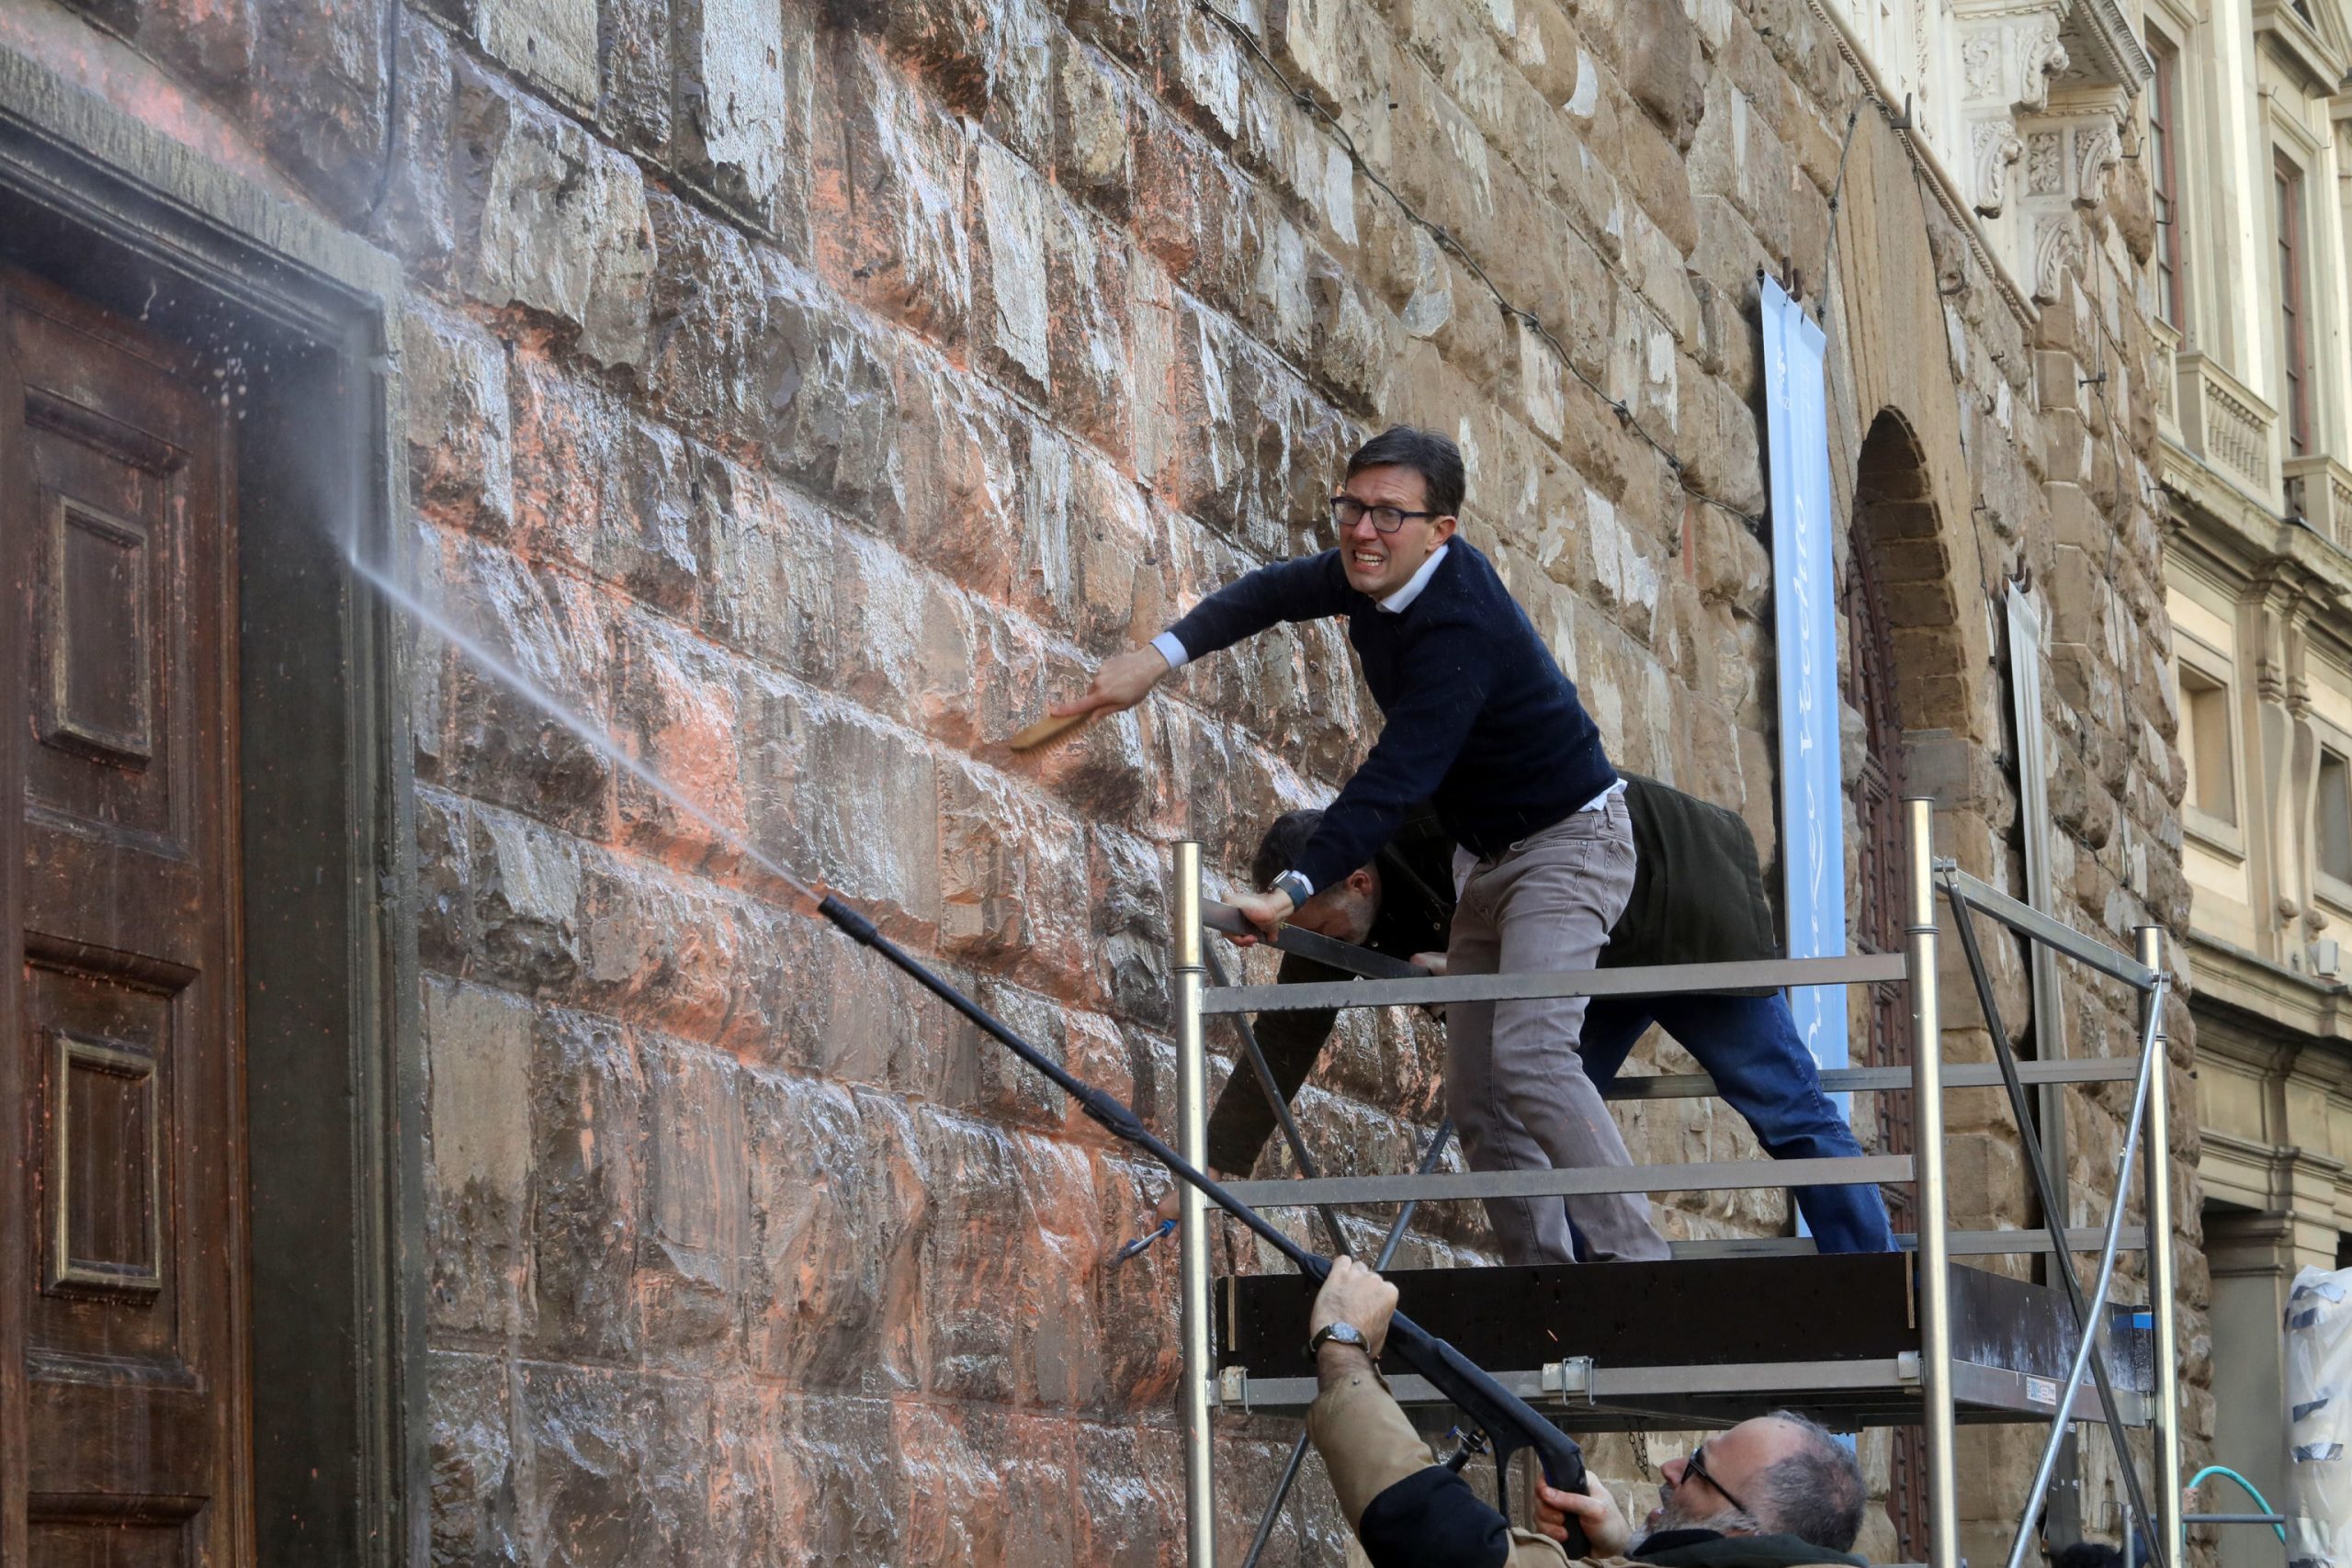 意大利古迹遭环保人士泼漆 市长亲自拦阻怒批“野蛮人”